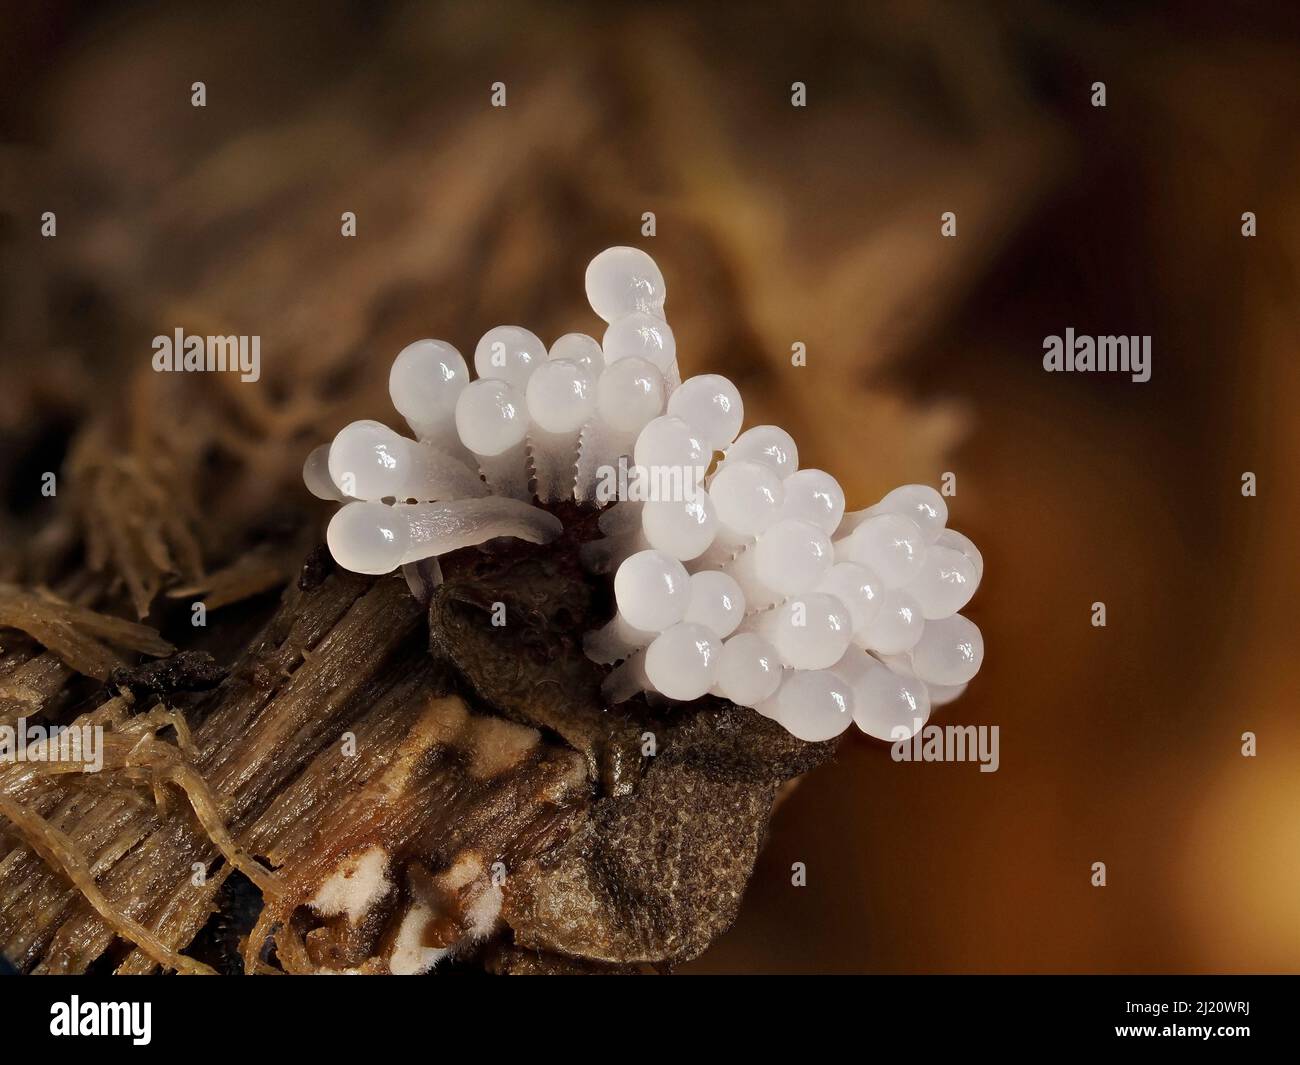 Schleimschimmelpilz (Stemonitis splendens) Sporangie beginnt auf verrottendem Baumstamm zu wachsen, Hertfordshire, England, Großbritannien, Juli - Fokus gestapelt Stockfoto